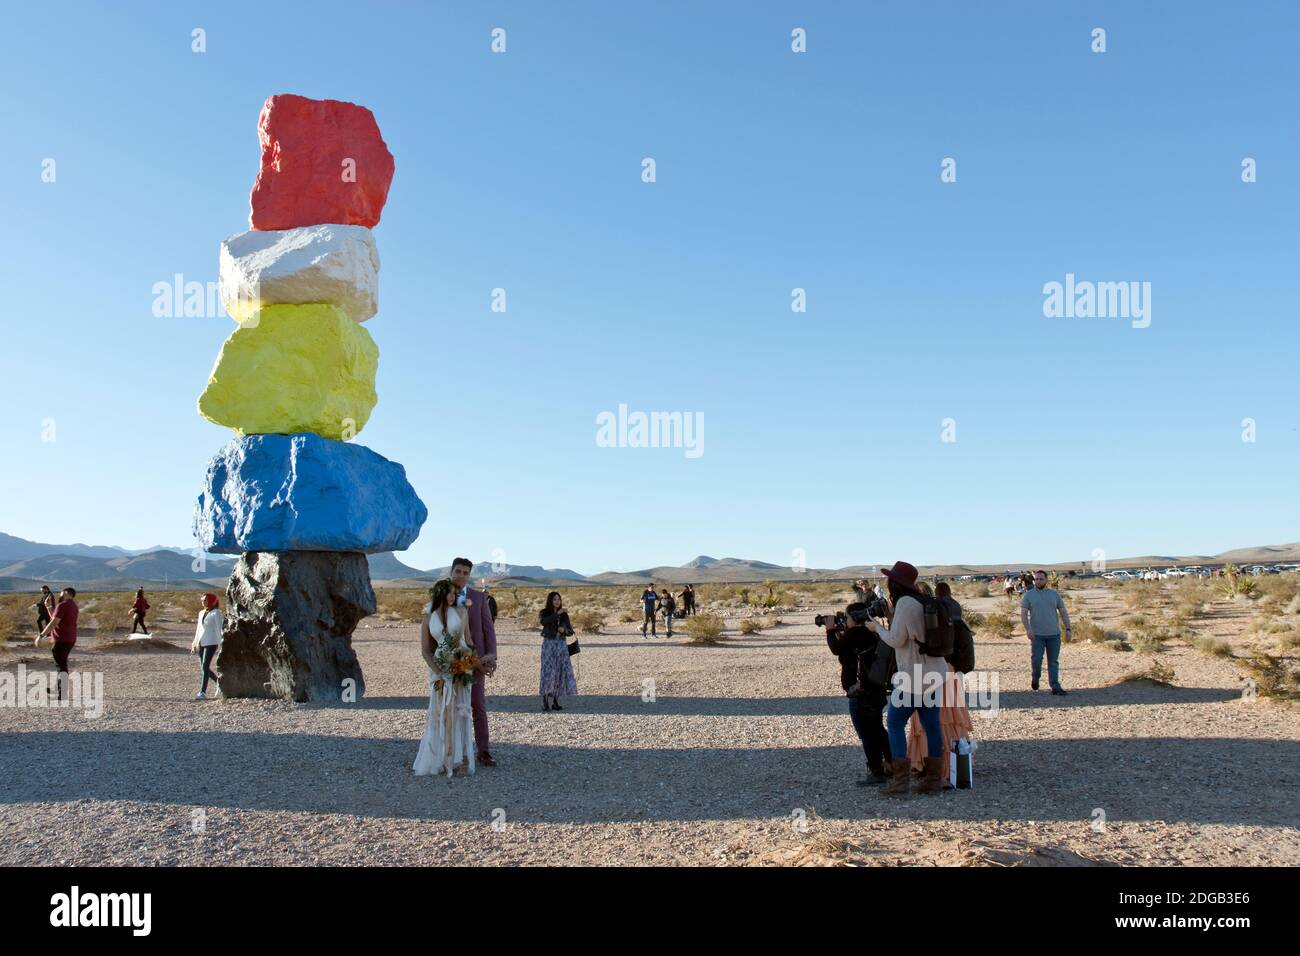 Une mariée et un marié font des photos dans sept montagnes magiques, une œuvre d'art de rochers empilés et peints de couleurs vives, dans le désert près de Las Vegas. Banque D'Images